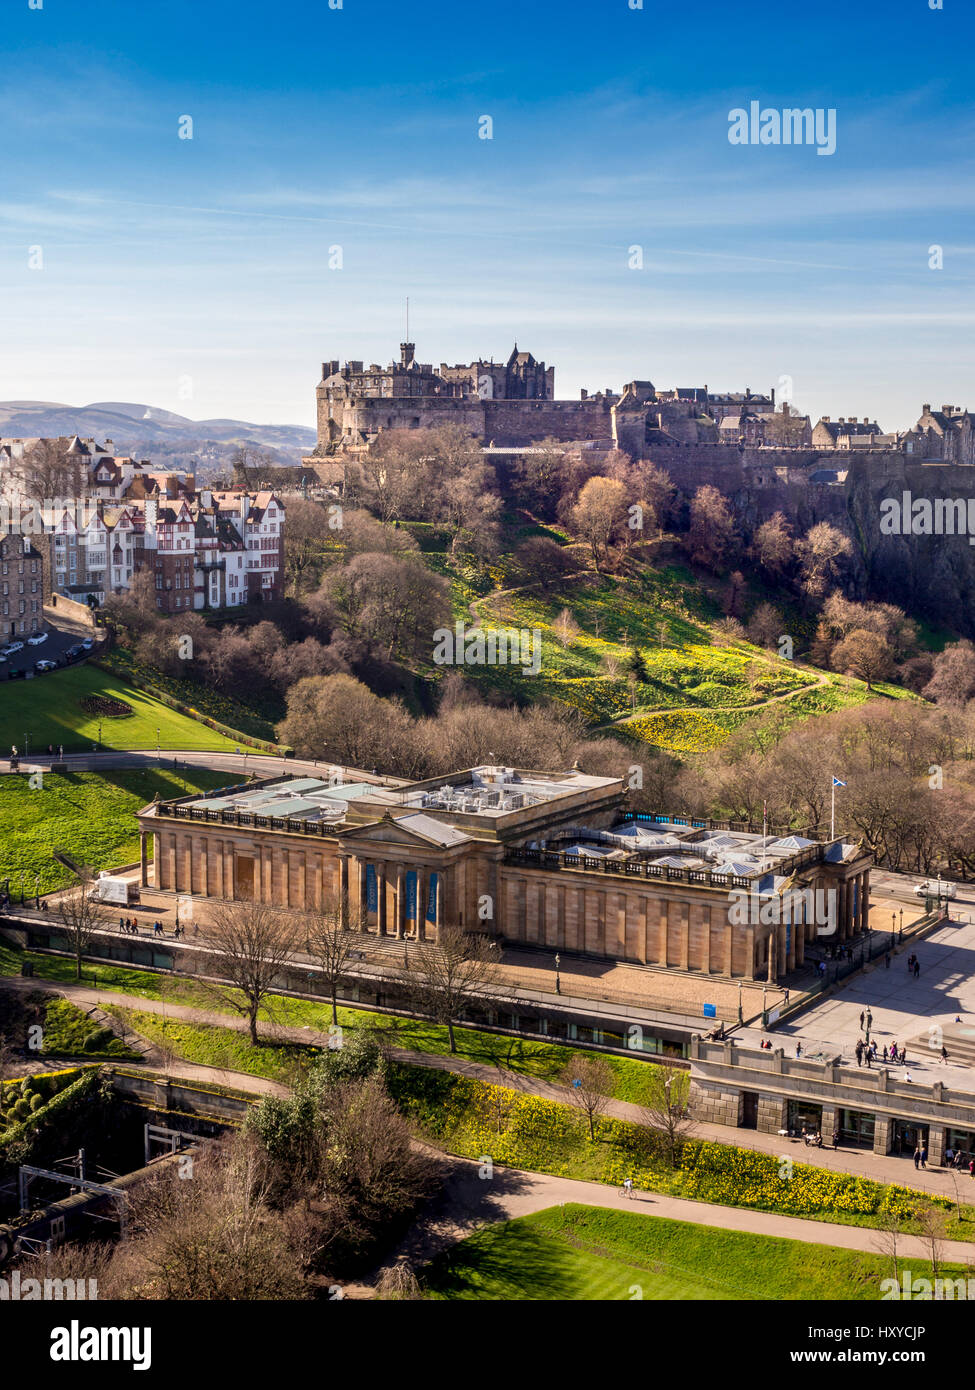 Vista aerea della Scottish National Gallery sul Mound con il Castello di Edimburgo in lontananza. Edimburgo, Scozia, Regno Unito. Foto Stock